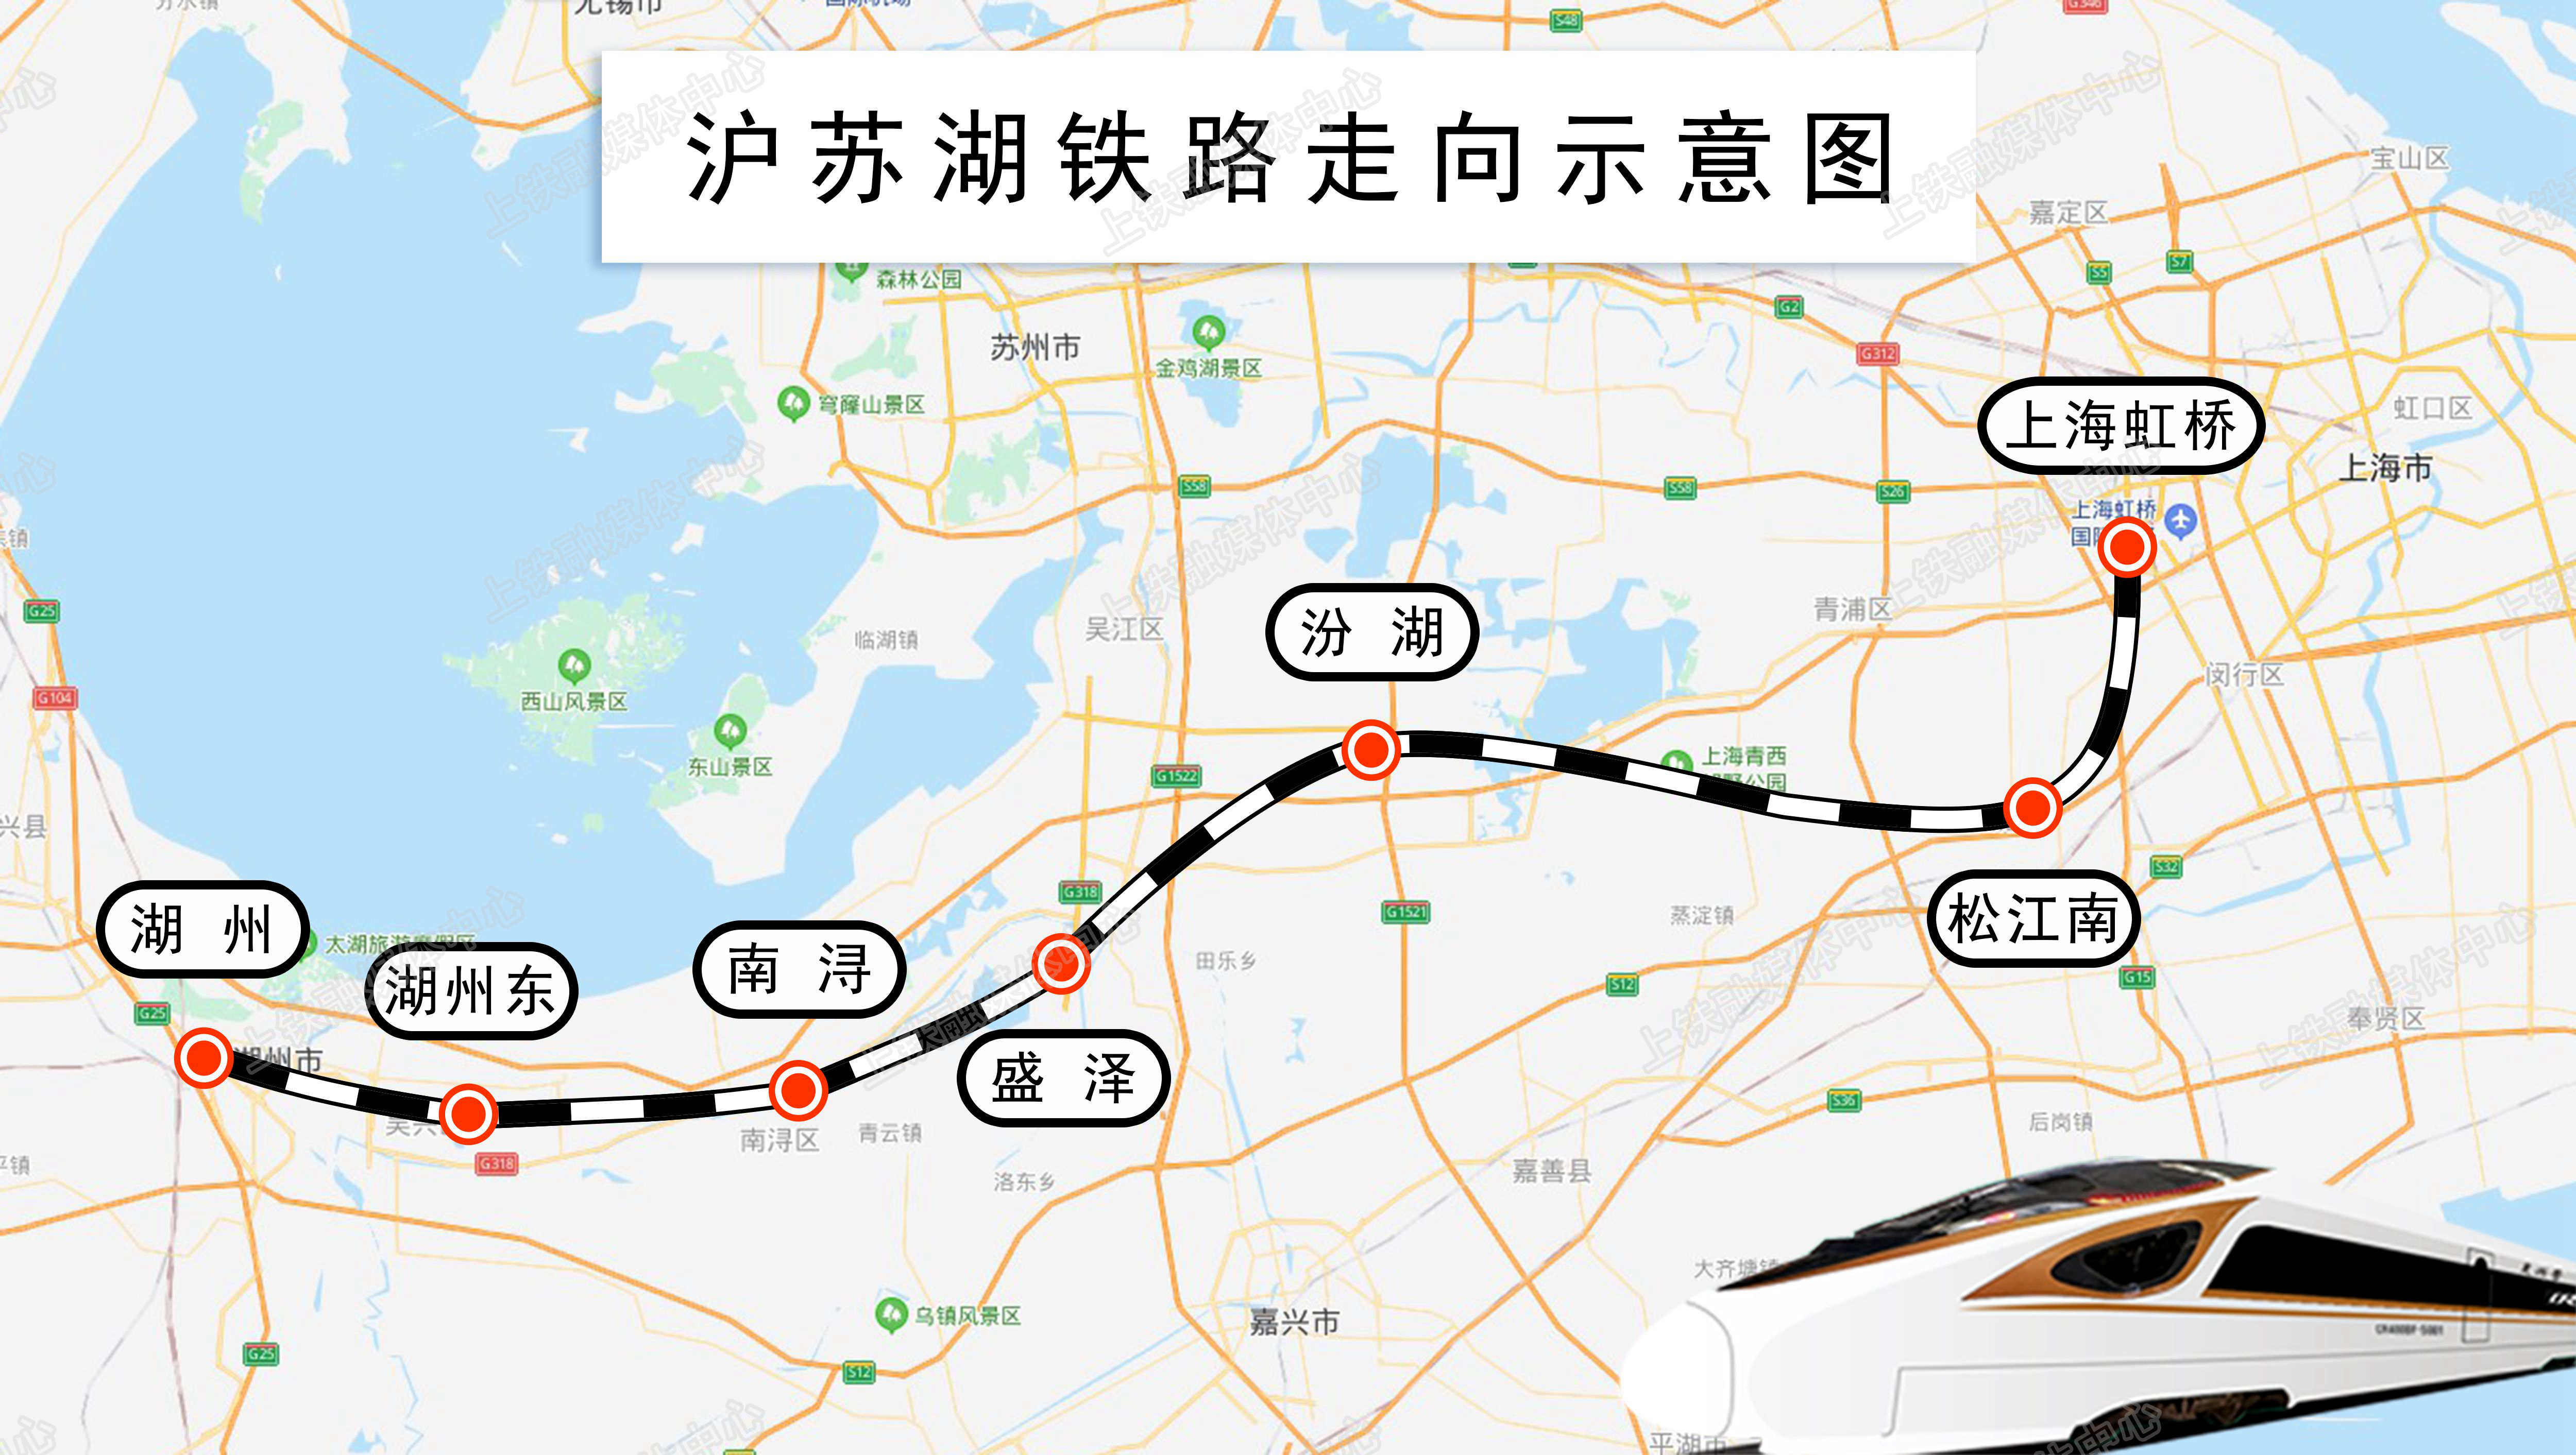 上海轨道交通宝嘉线未来规划展望 - 哔哩哔哩